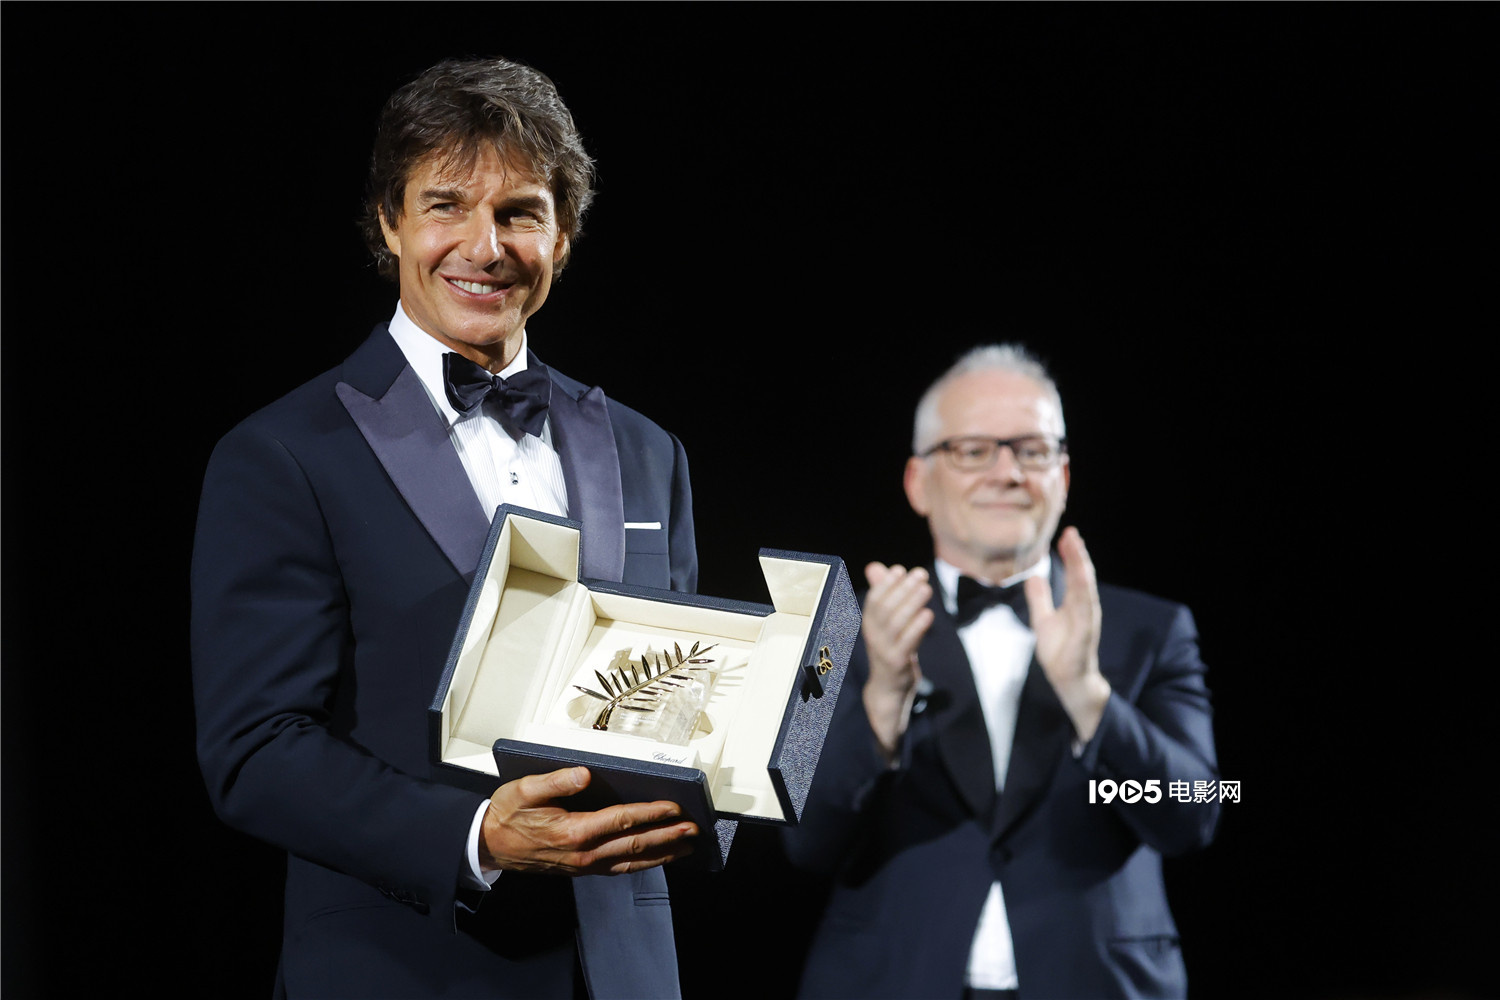 《壮志凌云2》戛纳首映 阿汤哥被授予荣誉金棕榈奖